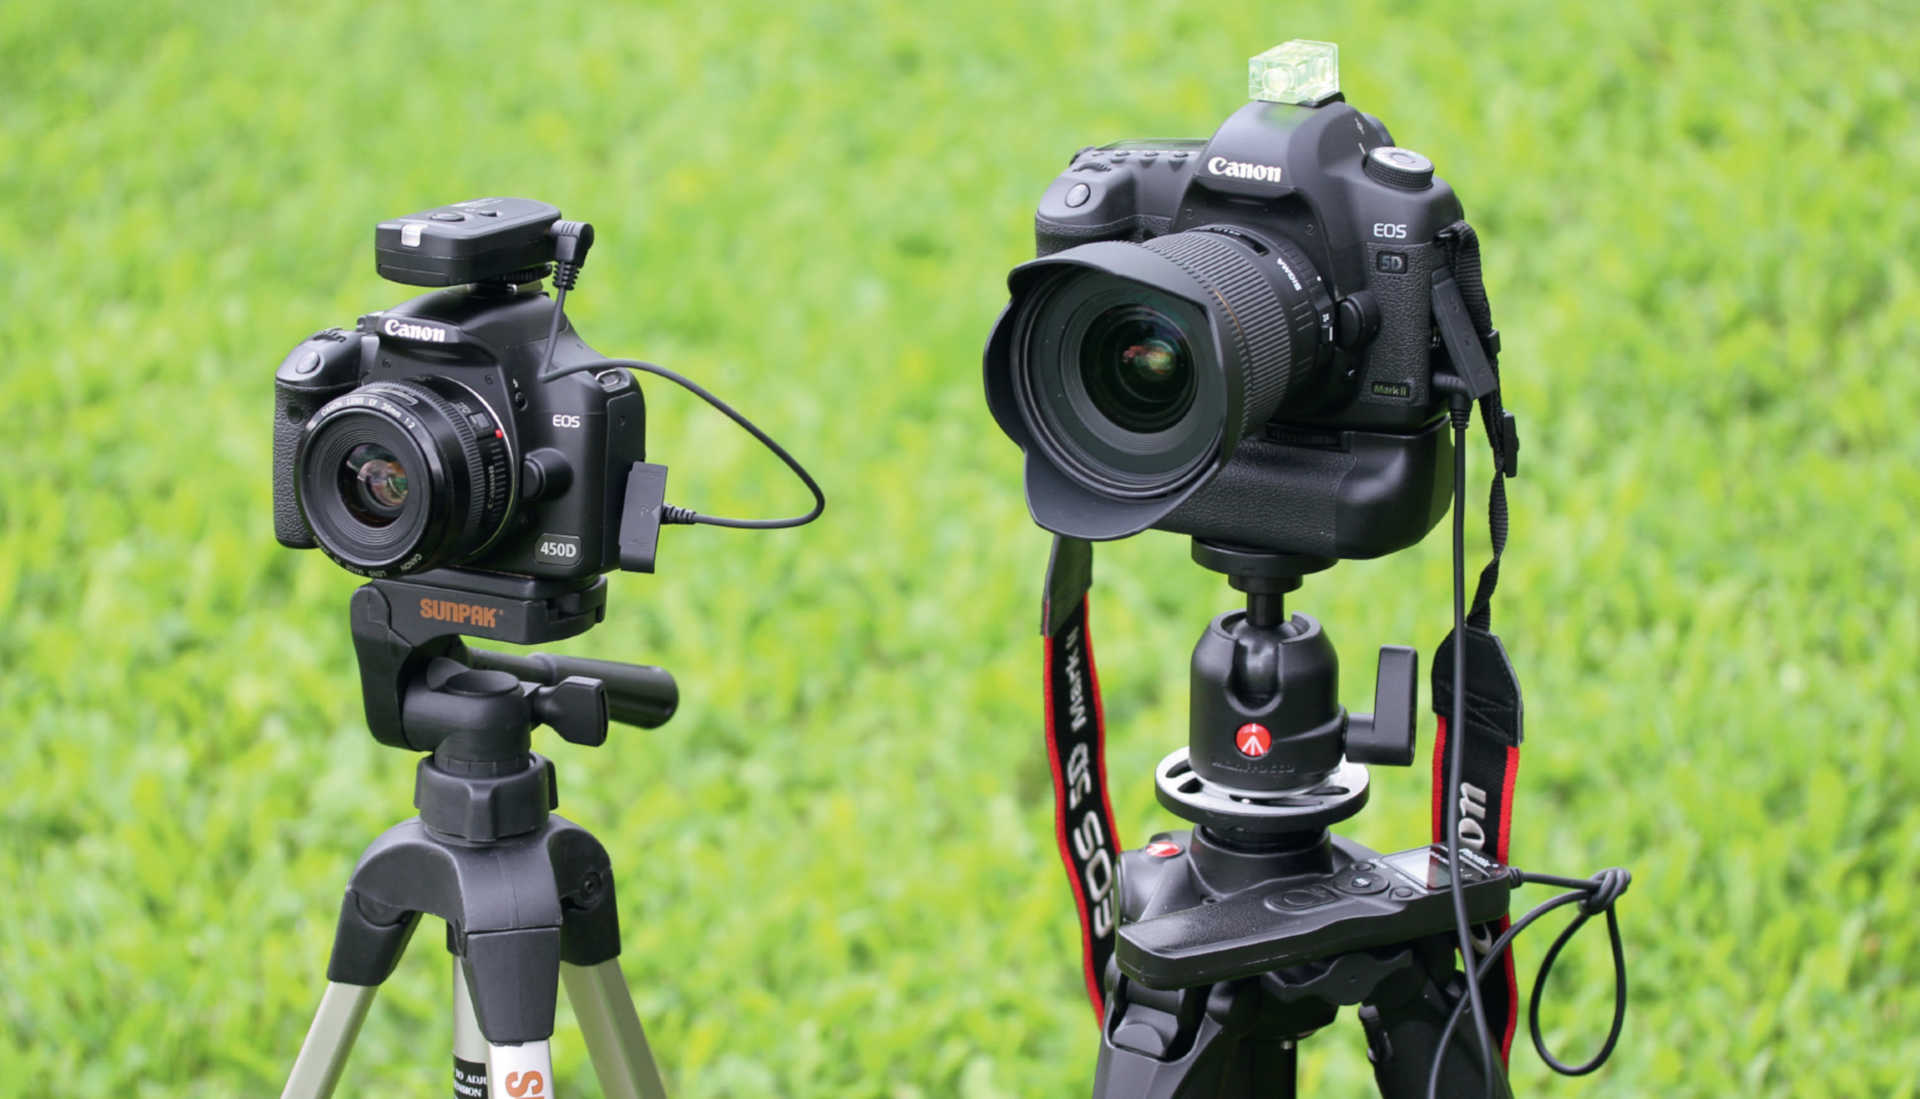 Na początek wystarczy niedrogi aparat z szerokokątną optyką (na zdjęciu po lewej Canon EOS 450D z tanim obiektywem 35mm), zdalny wyzwalacz (tu wykorzystano zdalny wyzwalacz bezprzewodowy), oraz niedrogi statyw. Wytrawni astrofotografowie mogą skorzystać z pełnoklatkowej lustrzanki cyfrowej oraz jasnego obiektywu szerokokątnego (na zdjęciu po prawej Canon 5D z obiektywem o ogniskowej 20mm f/1,8). Podłączony grip z bateriami umożliwia wykonywanie dłuższych sekwencji zdjęciowych, które są automatycznie realizowane przez programowalny wyzwalacz zdalny. U. Dittler